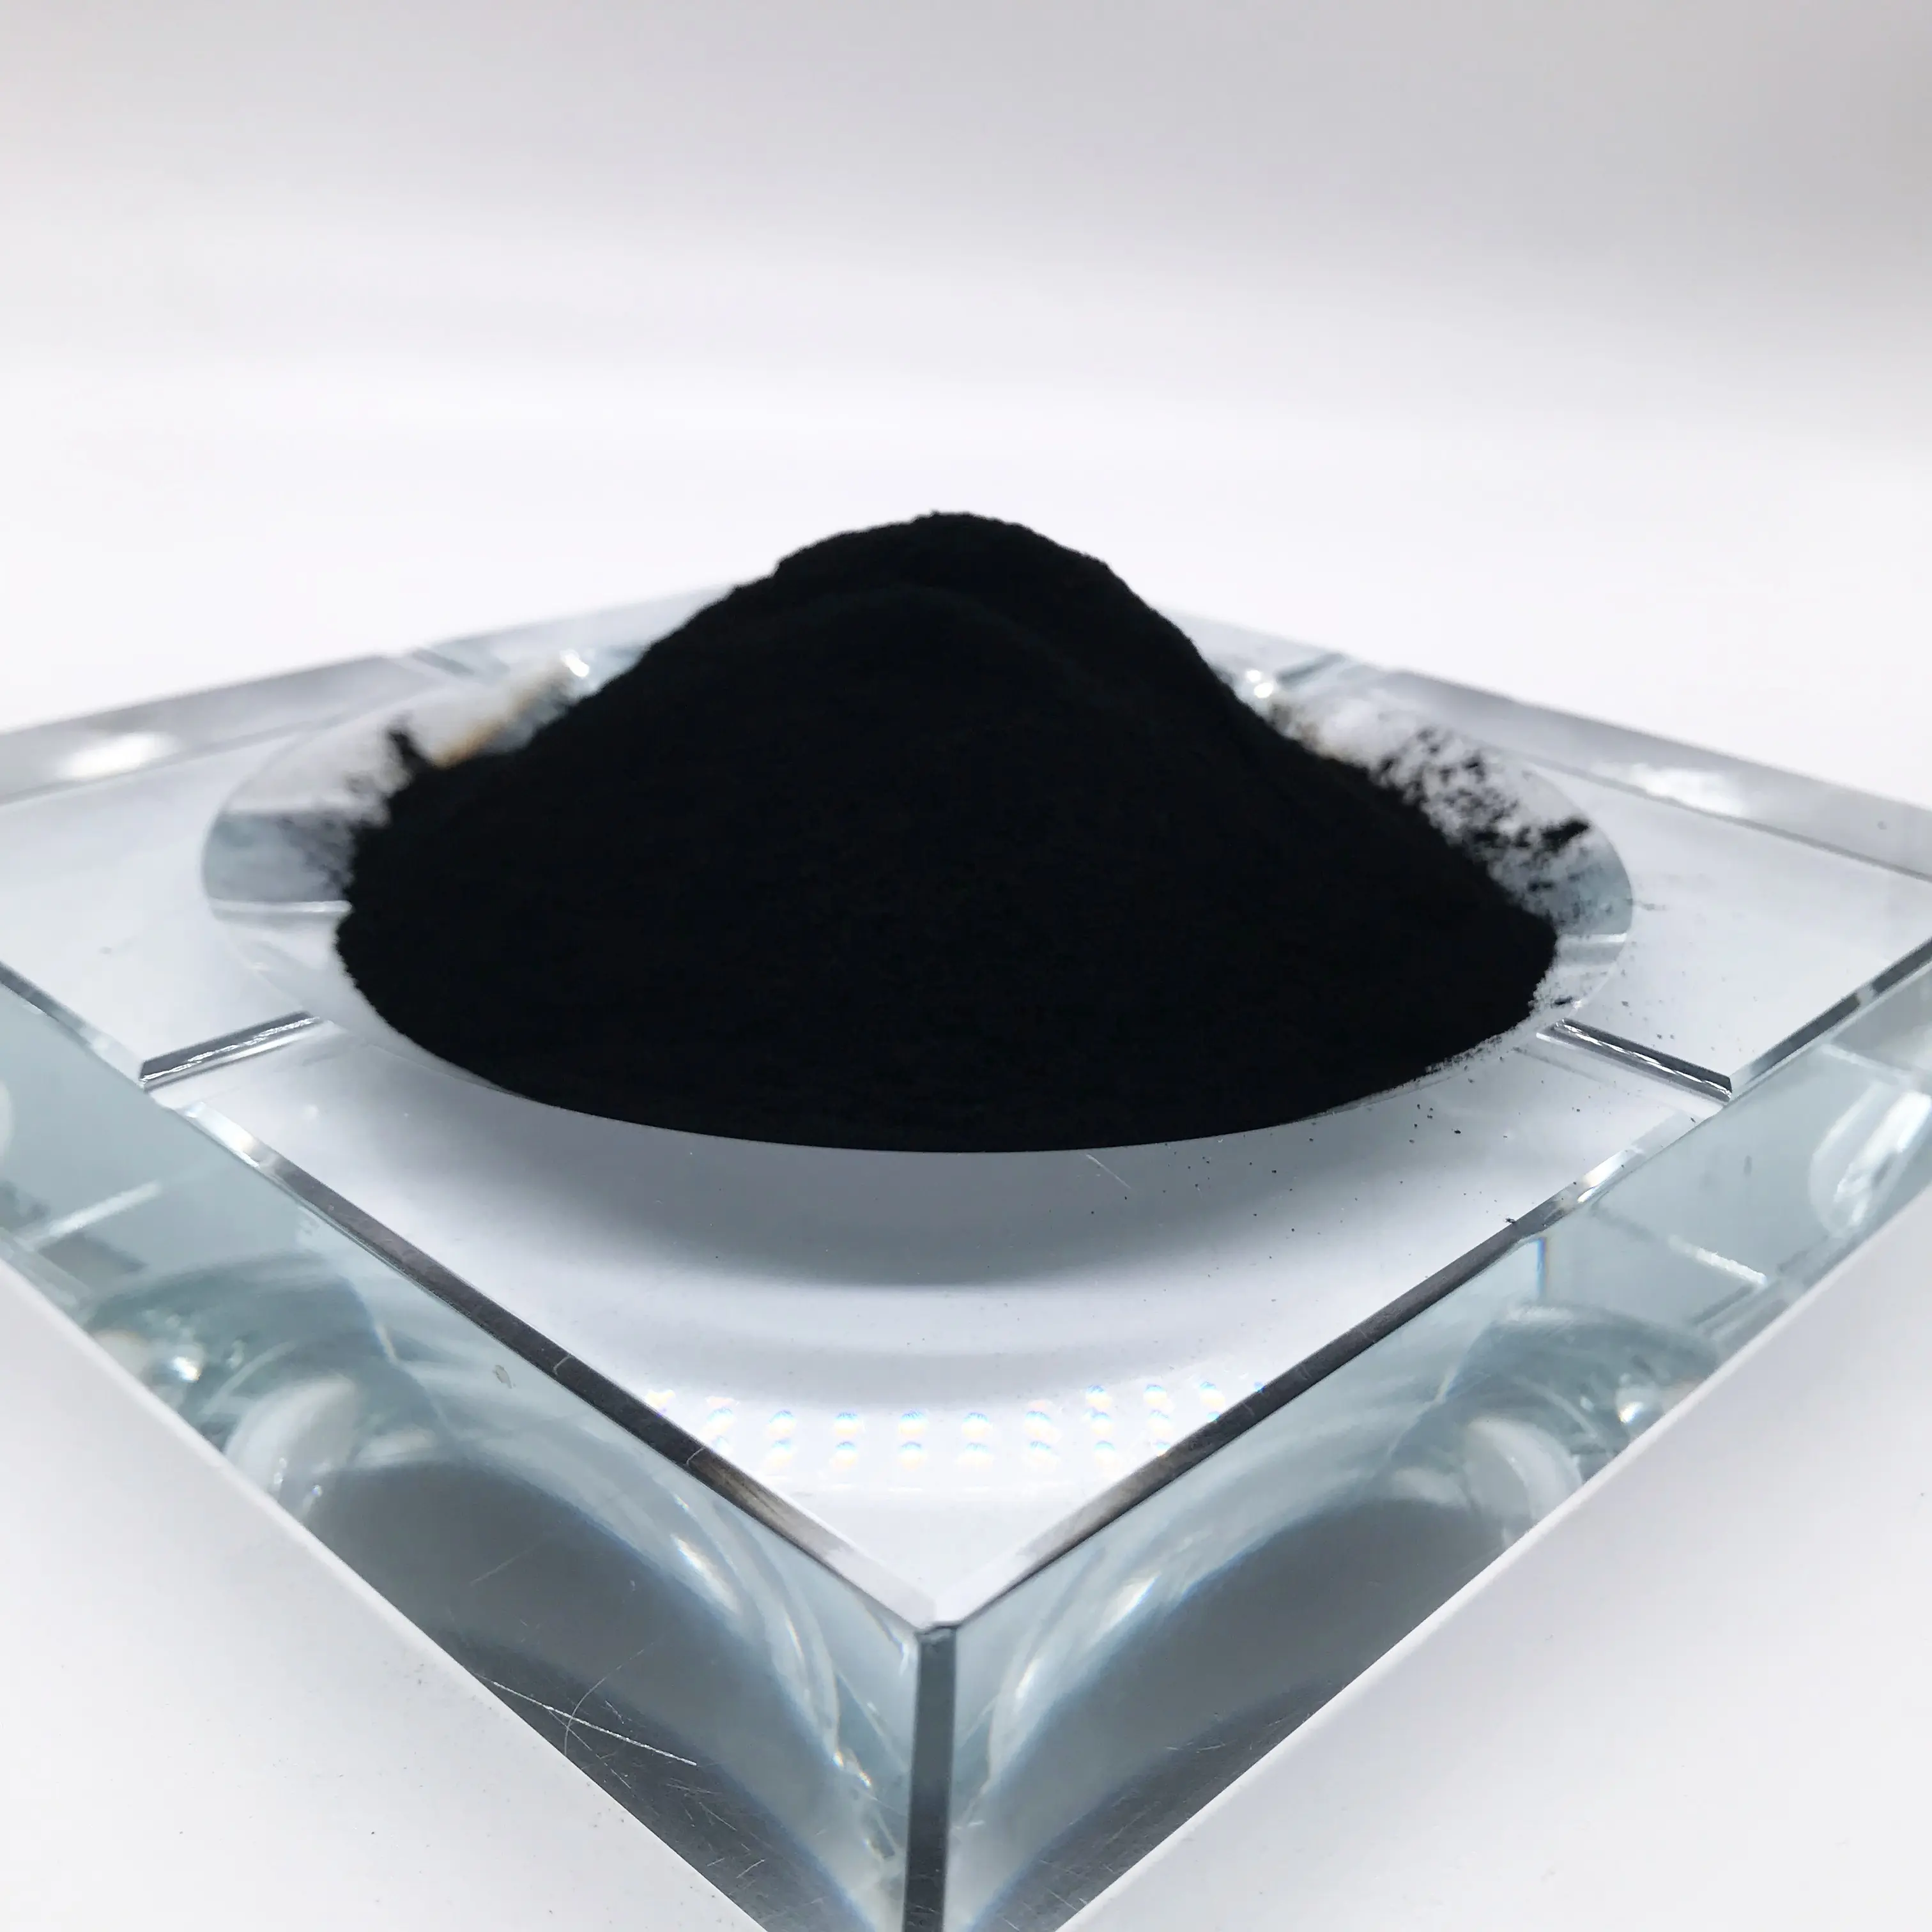 مورد N330 للمسحوق الأسود النقي عالي الجودة من ألياف الكربون الأسود للصباغ والبلاستيك والمطاط